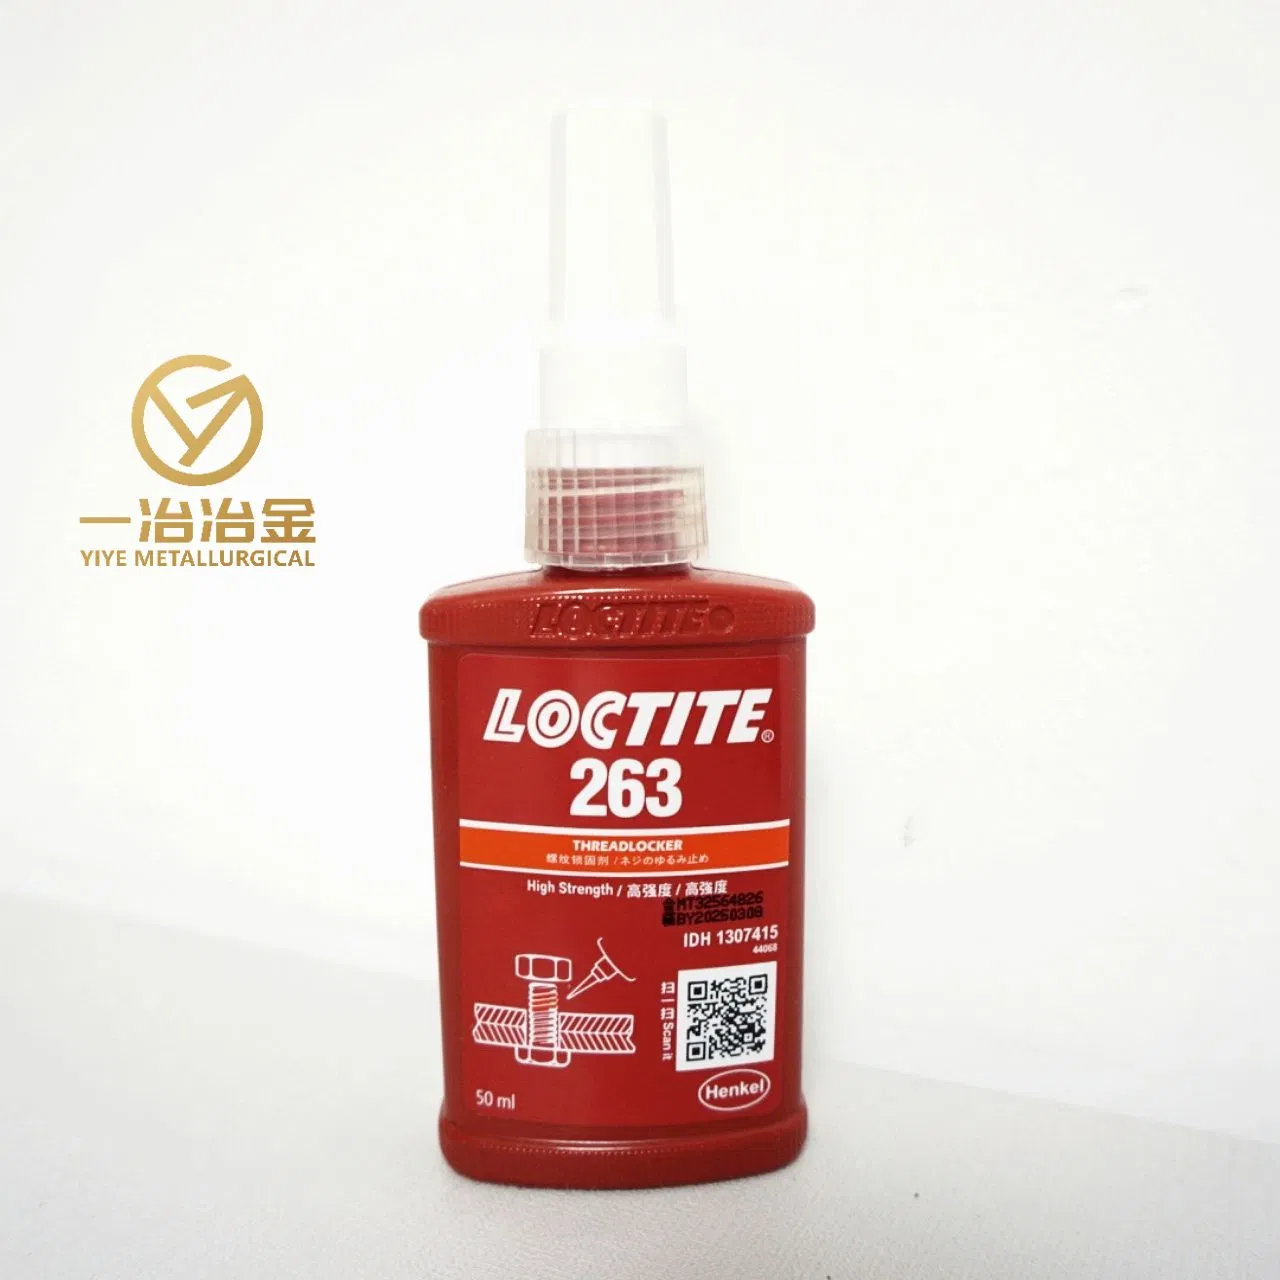 Loctite Screw Glue 263 Red High-Strength Anti-Loose Anaerobic Glue